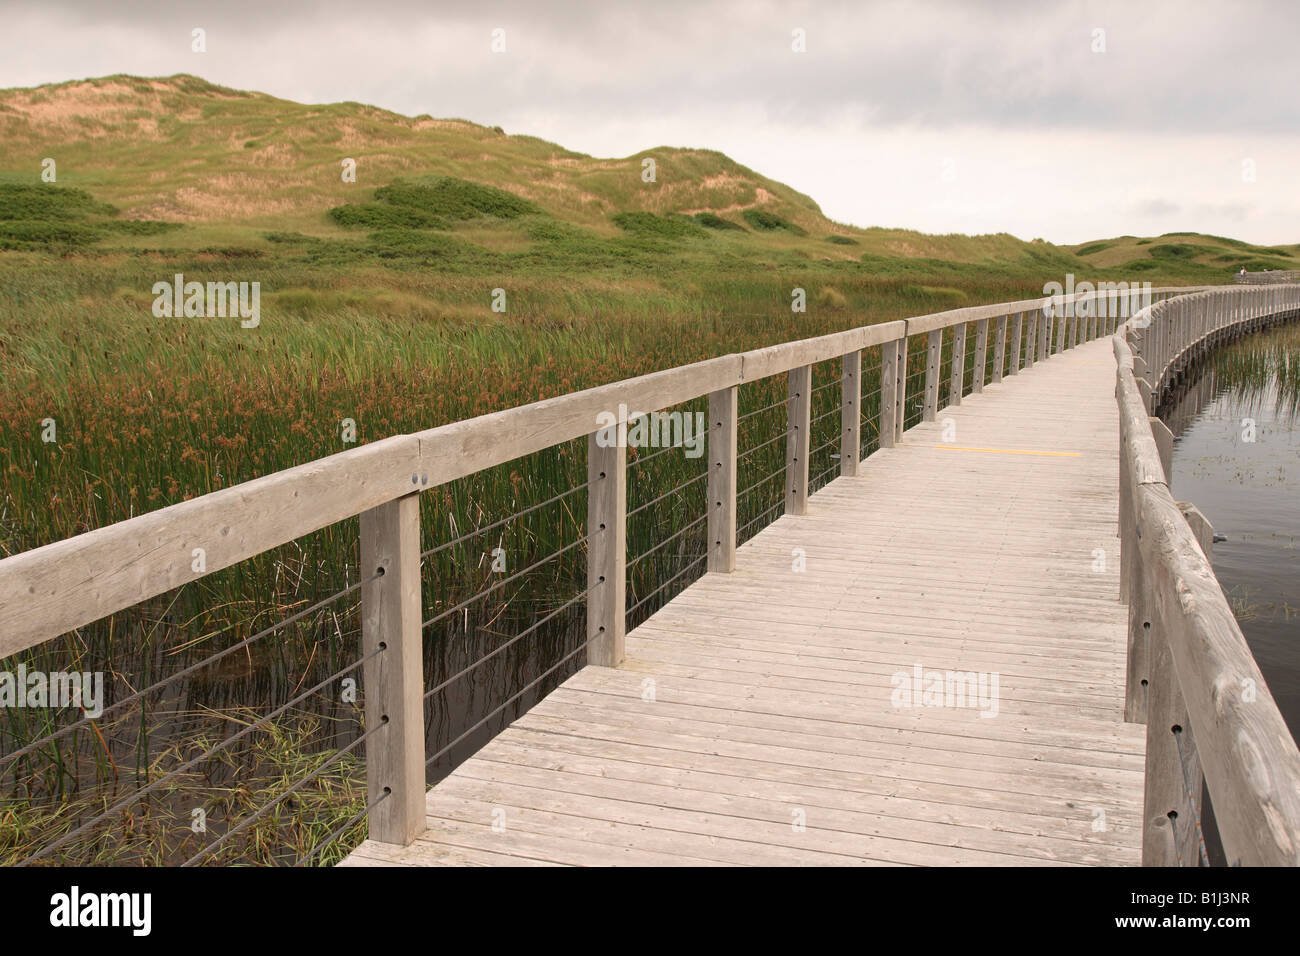 Boardwalk passing through a marshland, Greenwich, Prince Edward Island, Canada Stock Photo